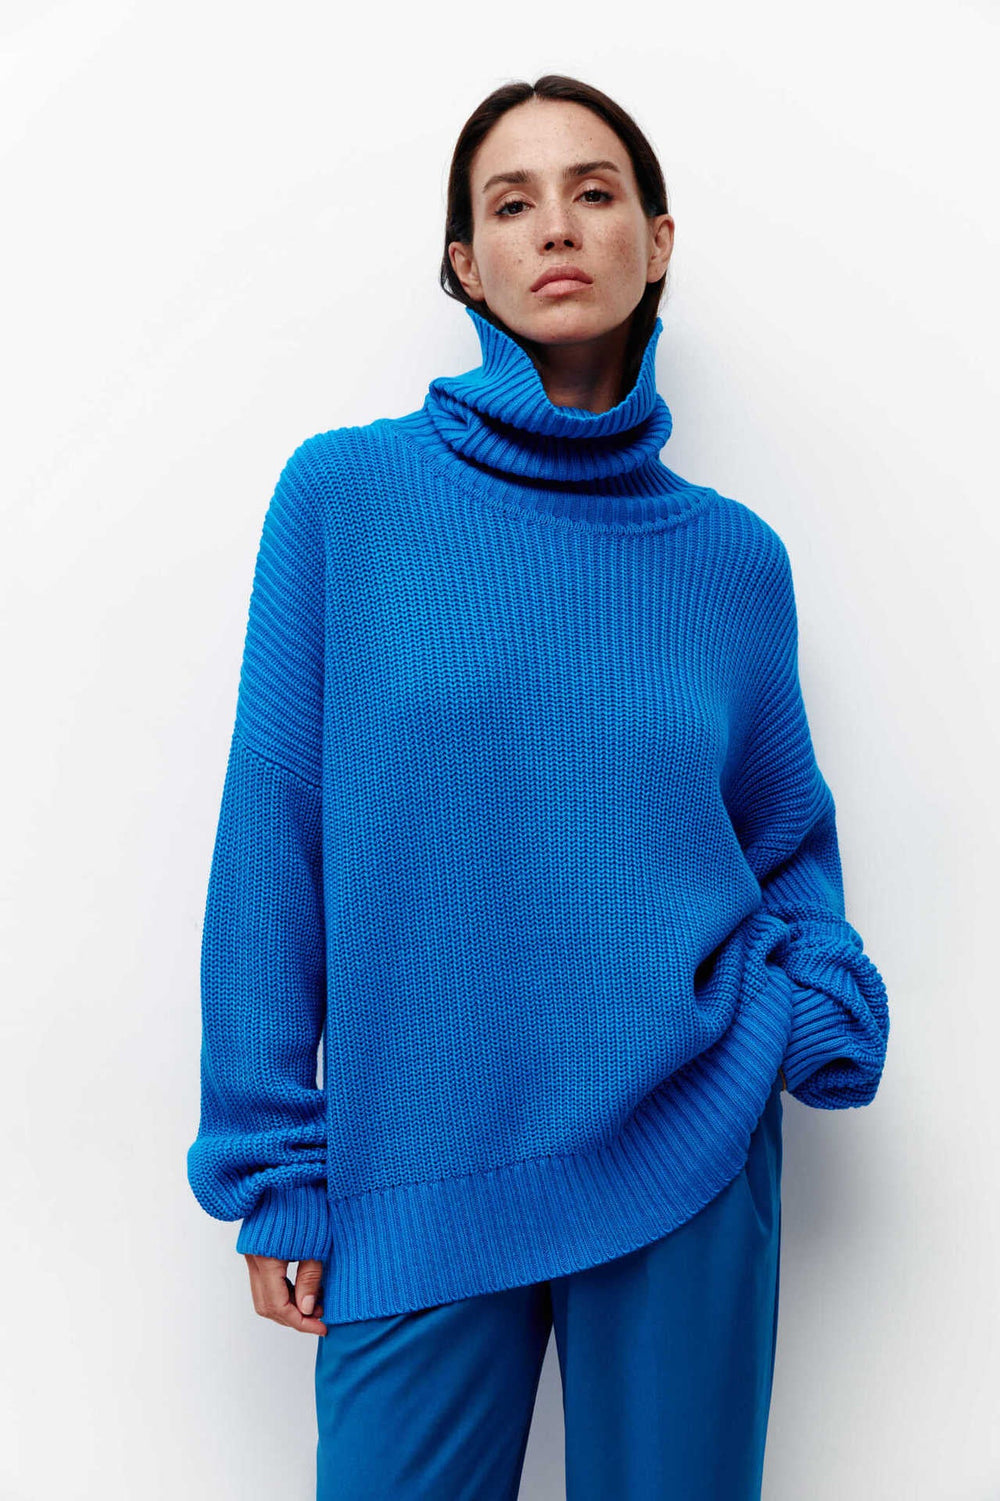 Autumn Winter Sweater Pullover Loose Casual Turtleneck Sweater Popular